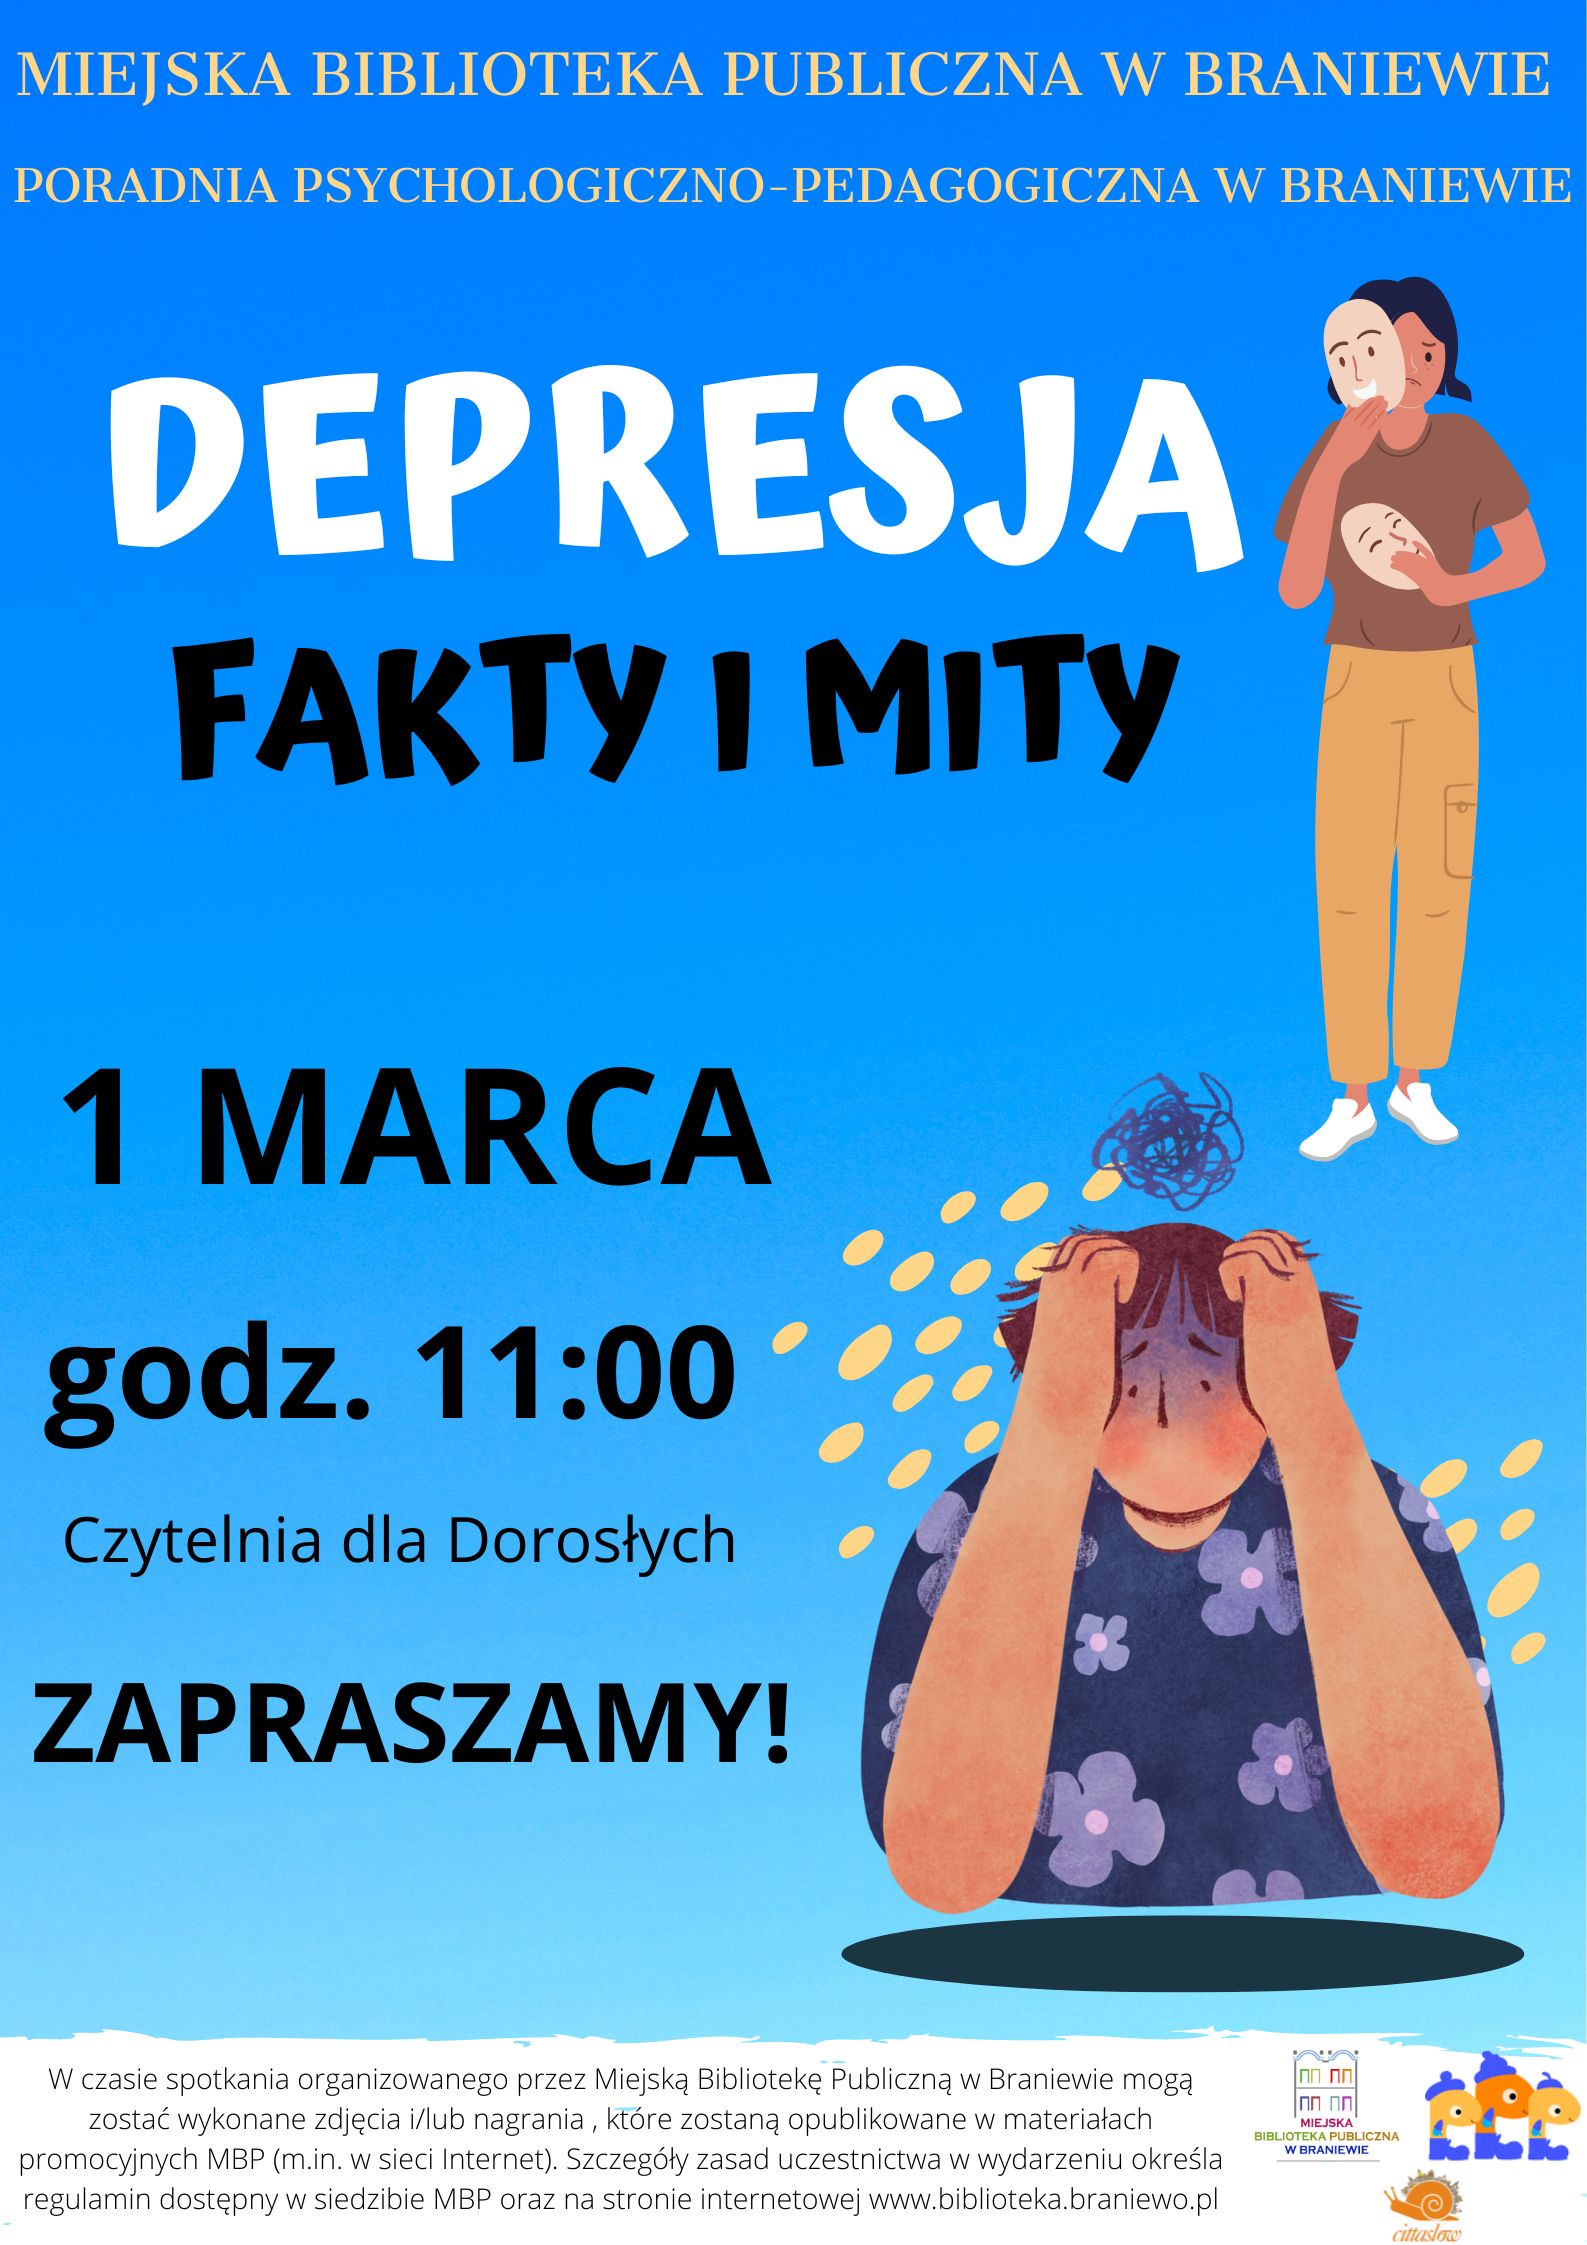 plakat informujacy o spotkaniu 1 marca o godzinie 11 dotyczacy depresji